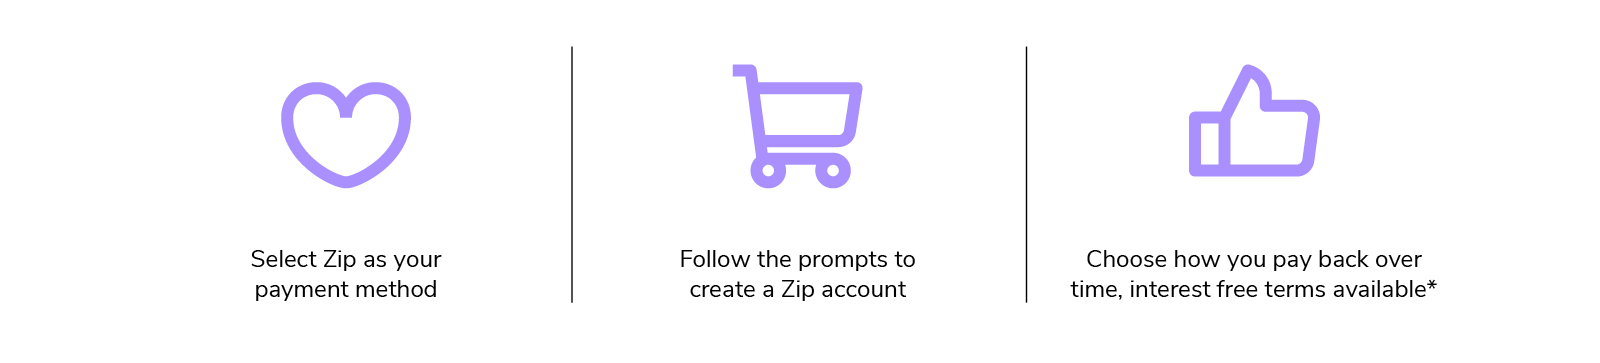 Zip Pay Online